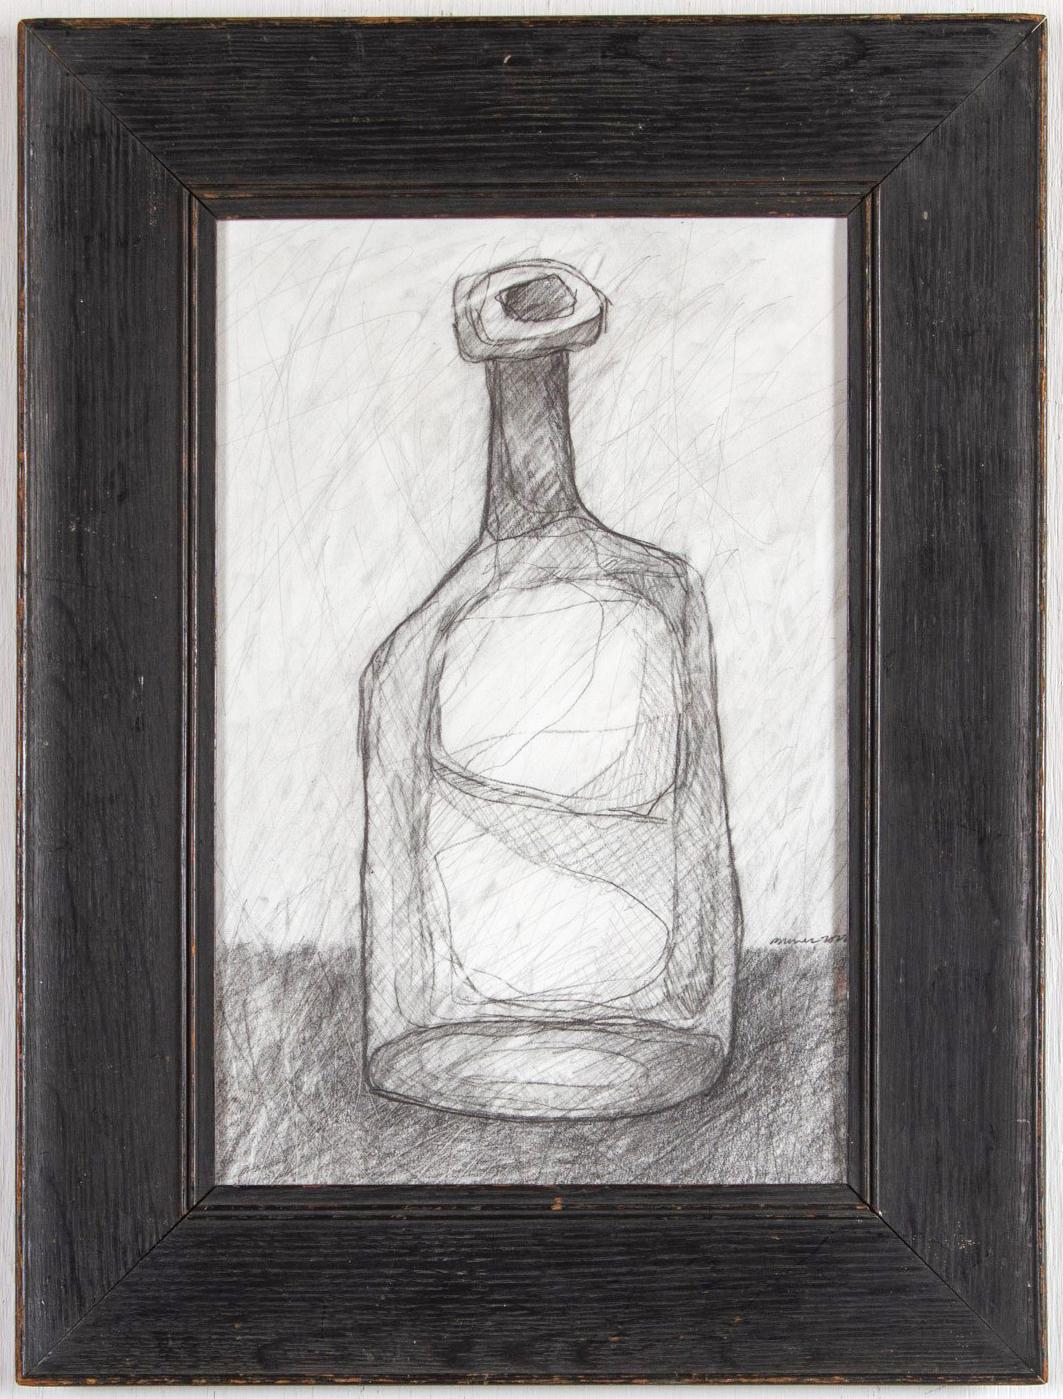 Einzelne Flasche II: Abstrakte Morandi-Flaschen-Stillleben-Bleistiftzeichnung im kubistischen Stil